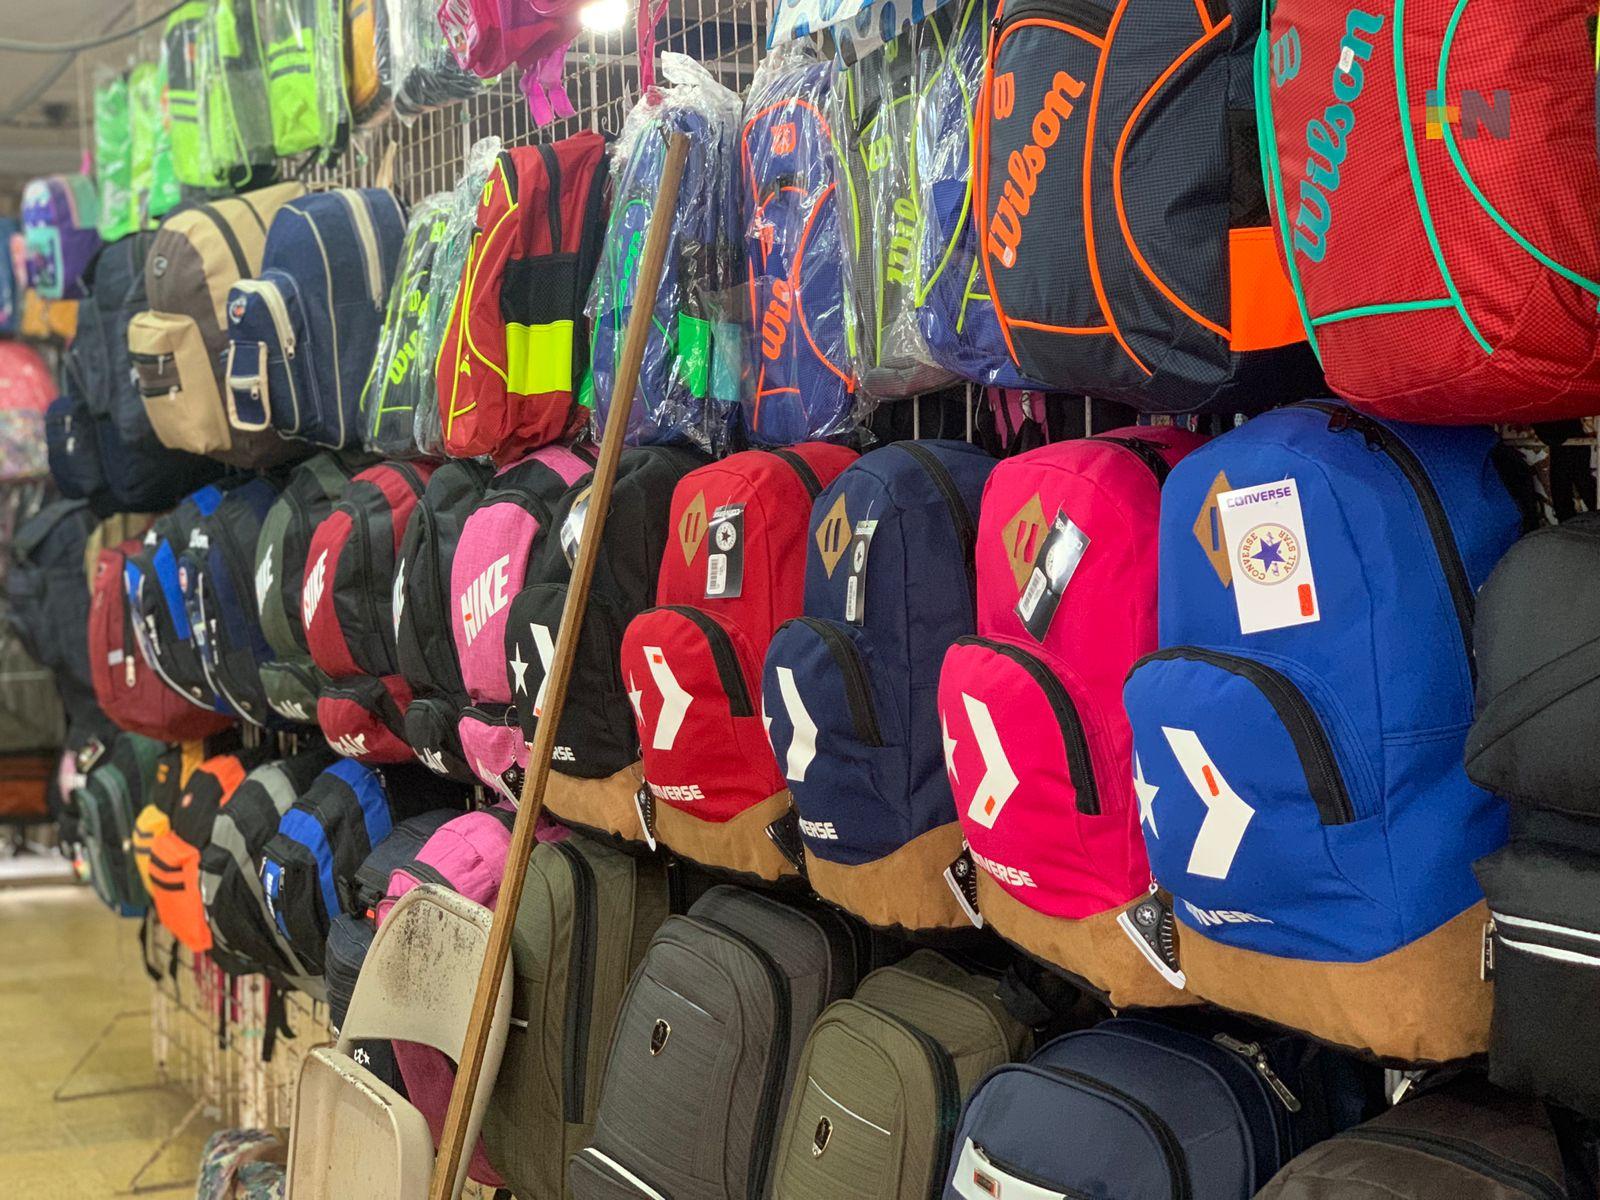 Comerciantes de mochilas y útiles escolares esperan reactivación económica con inicio de clases presenciales